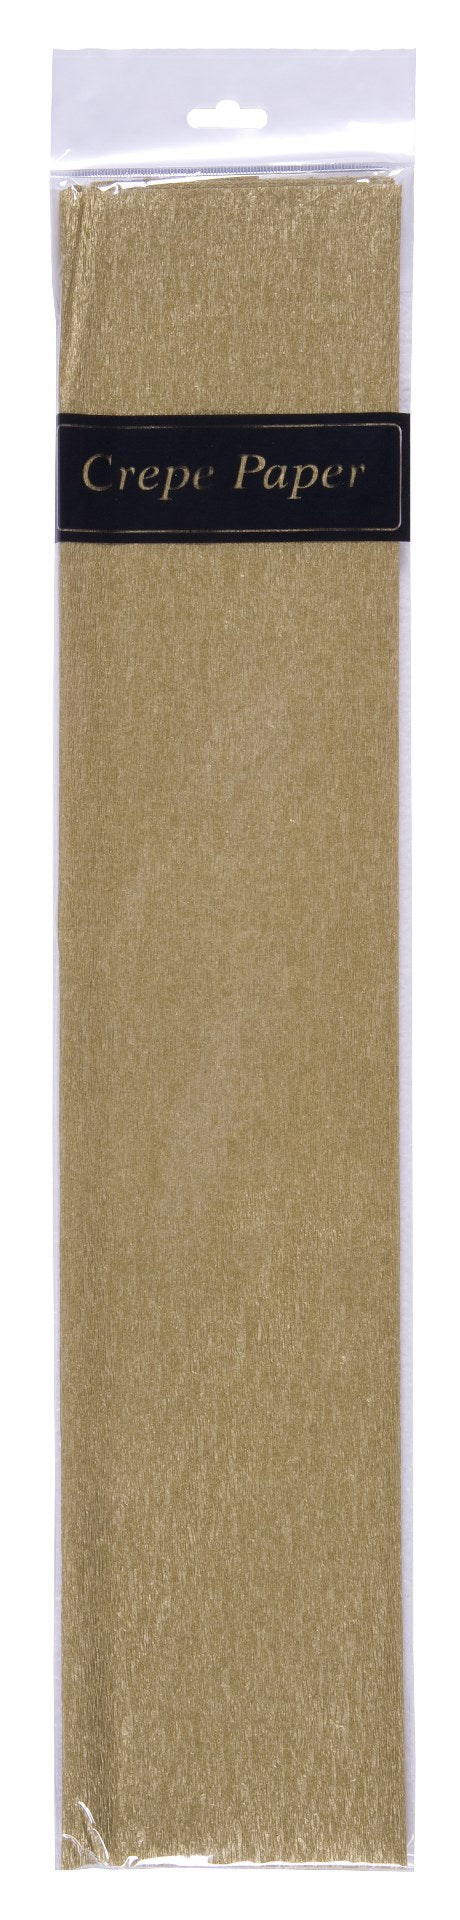 crepe paper (50cm x 2m)